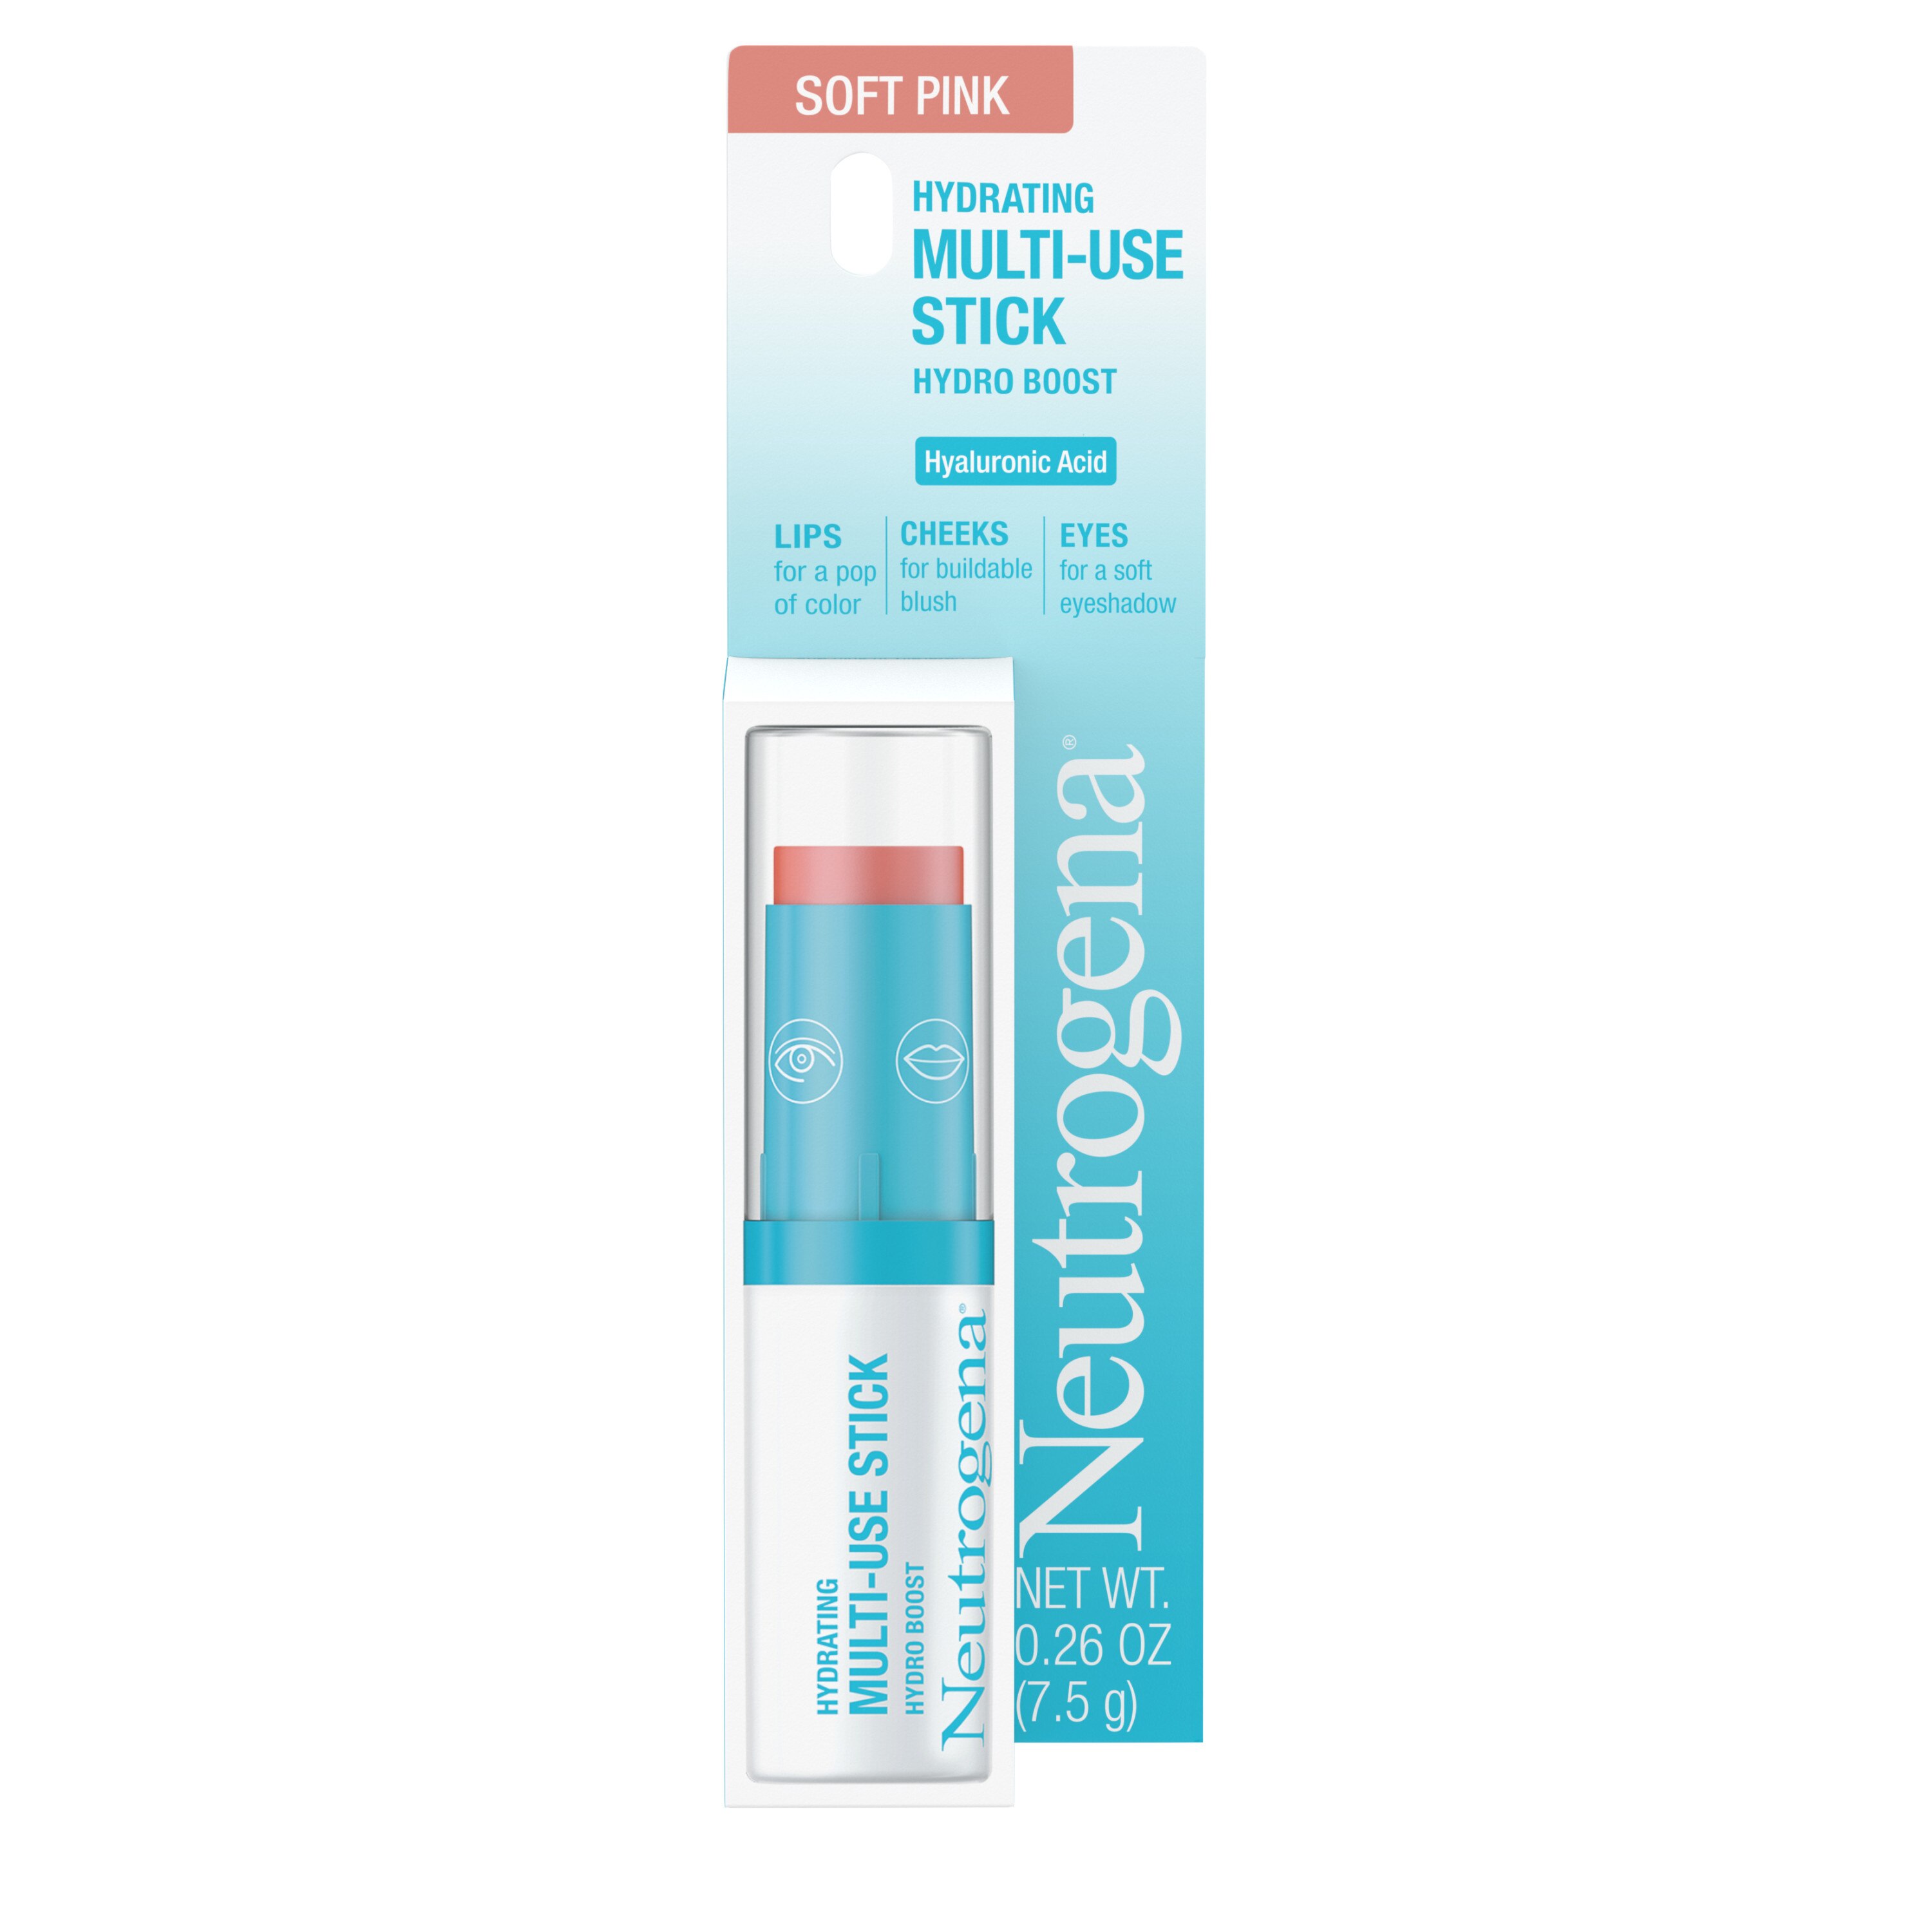 Neutrogena Hydrating Multi-Use Makeup Stick , CVS